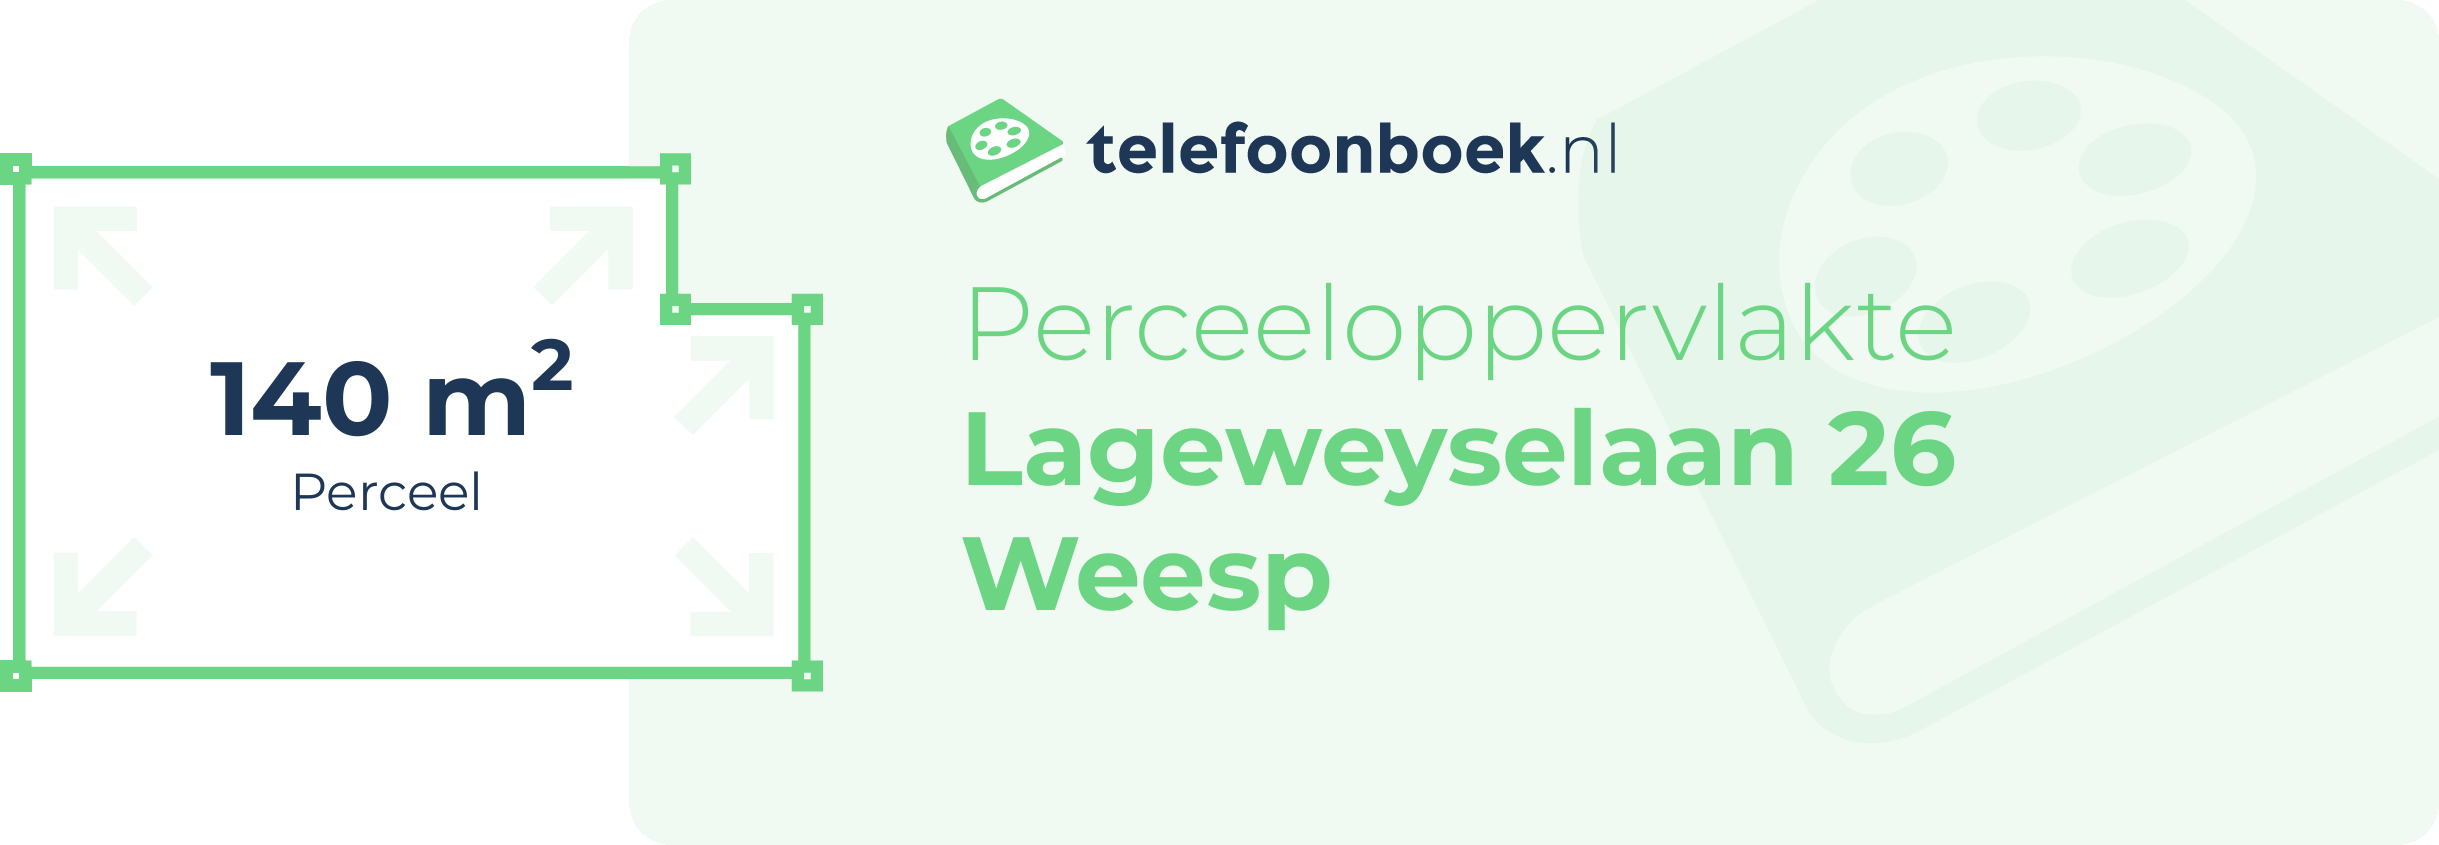 Perceeloppervlakte Lageweyselaan 26 Weesp